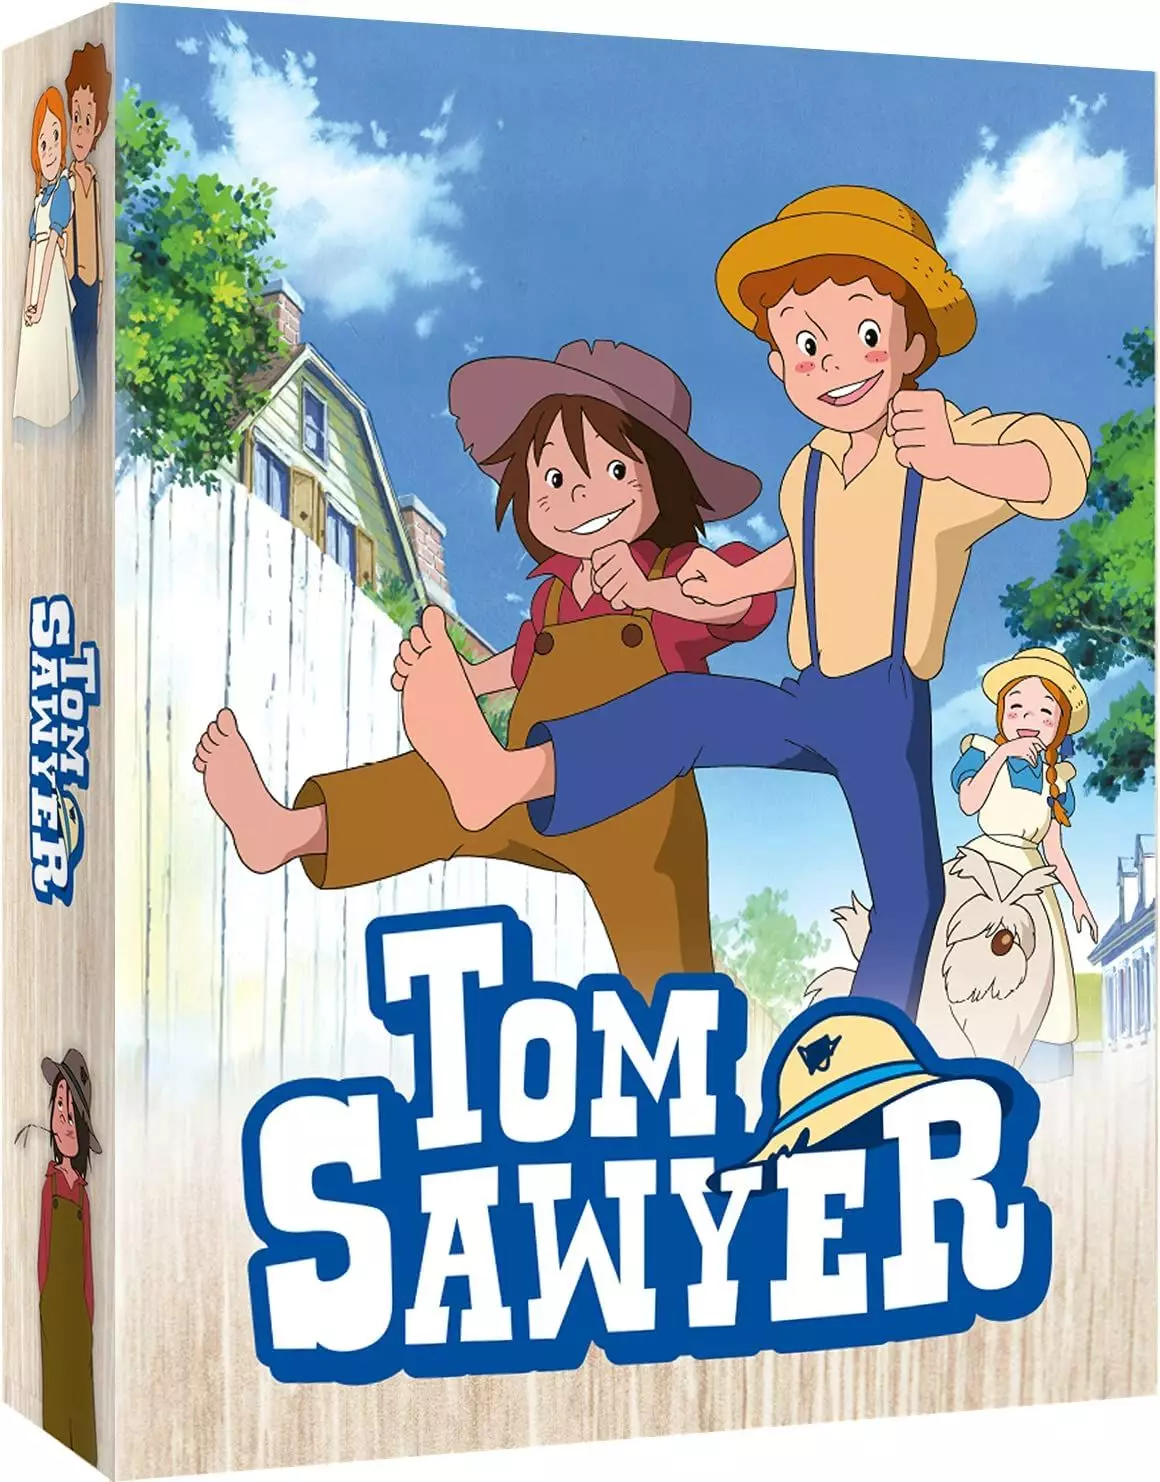 Tom Sawyer - Intégrale Blu-ray